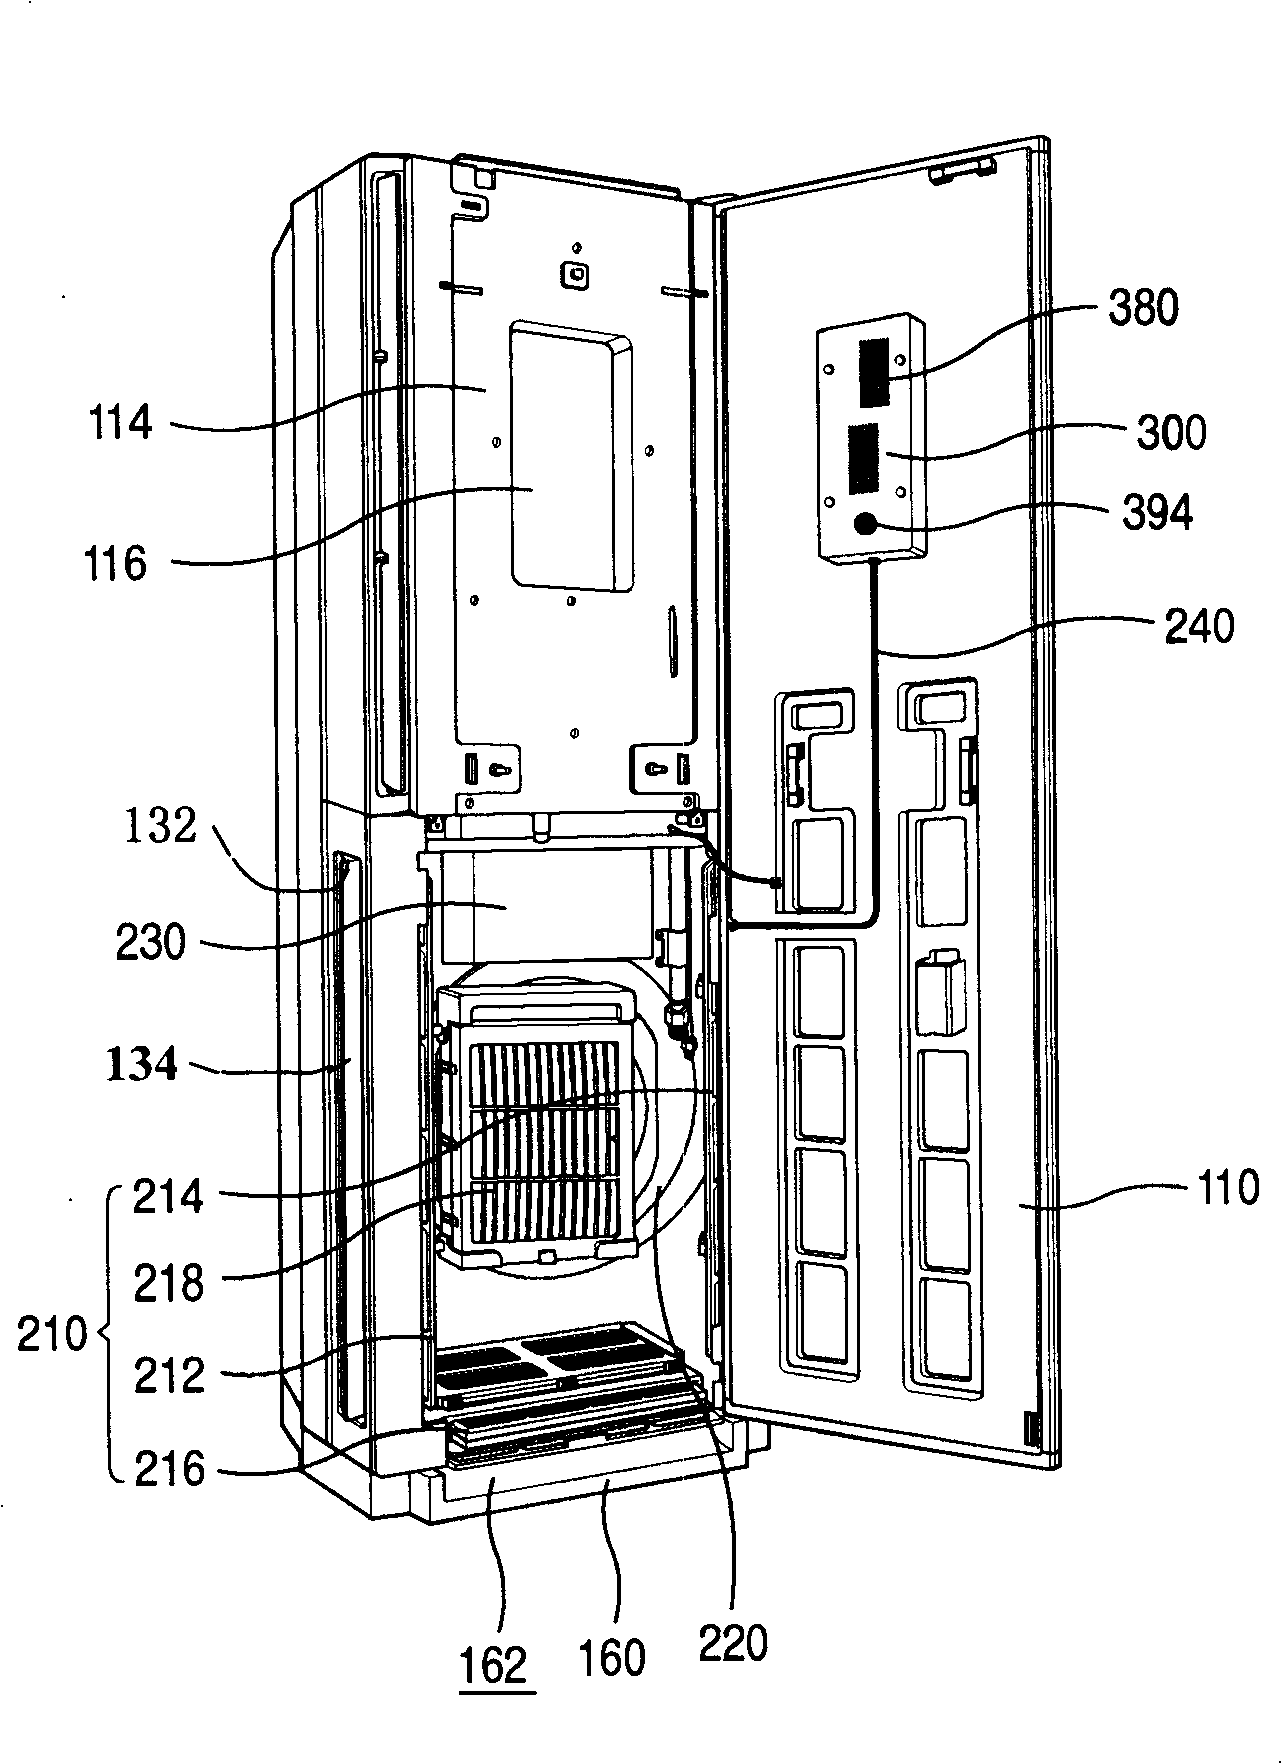 Indoor machine of air conditioner